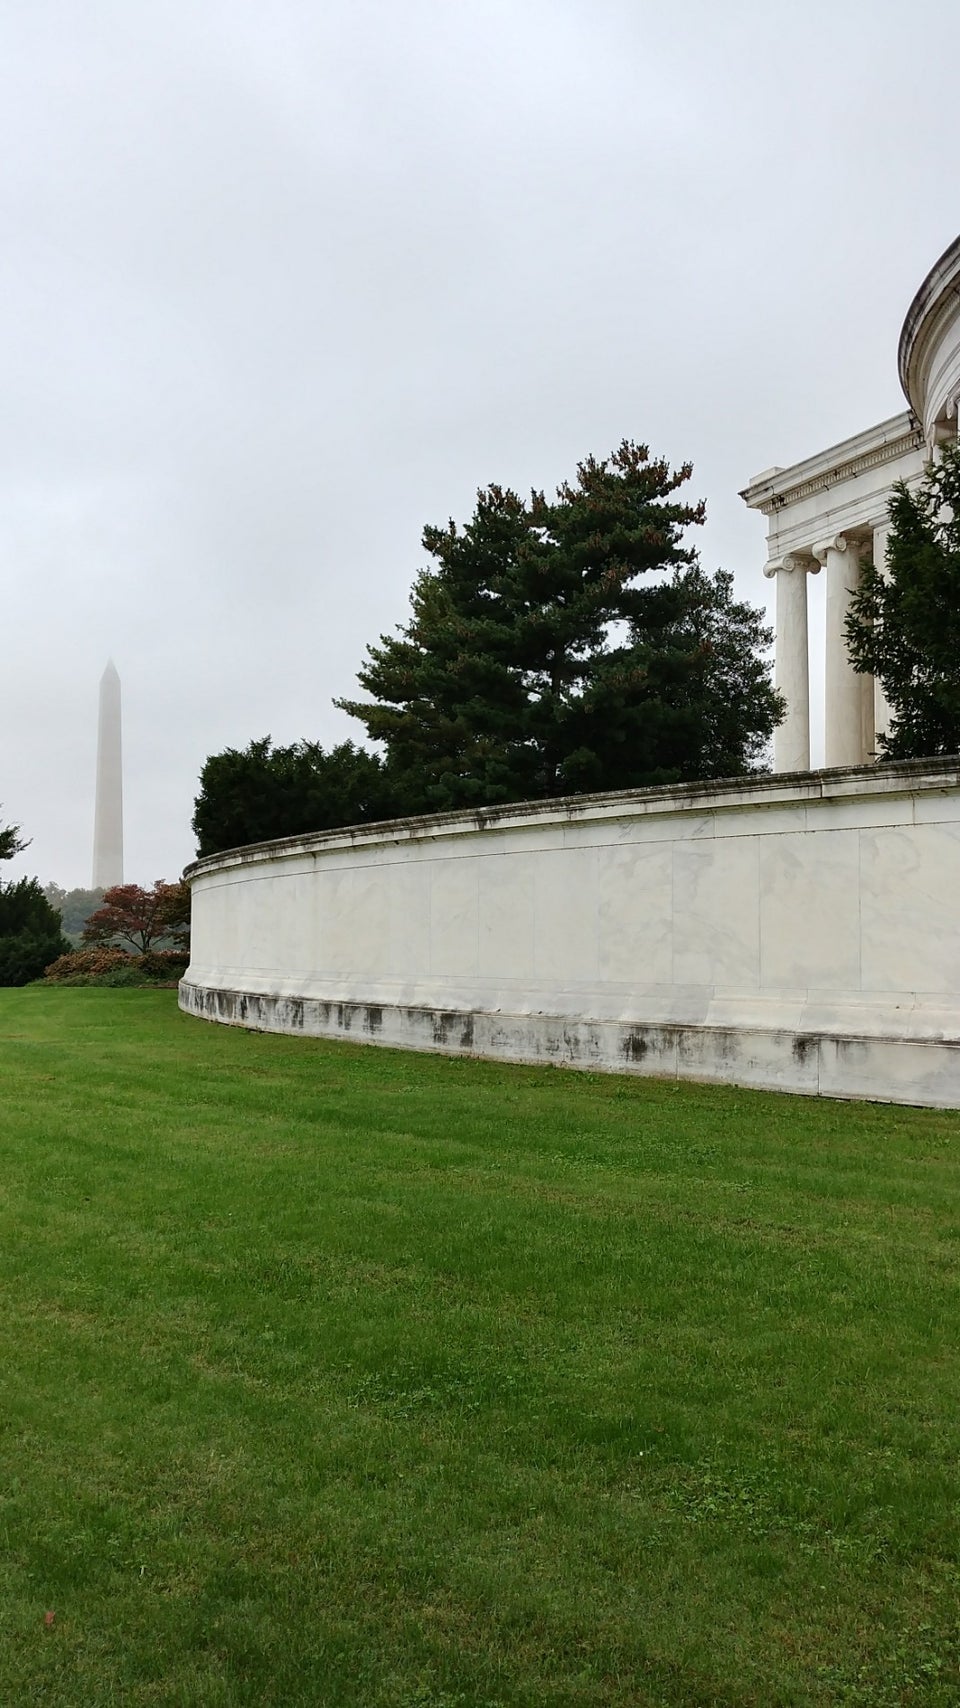 Photo of Thomas Jefferson Memorial